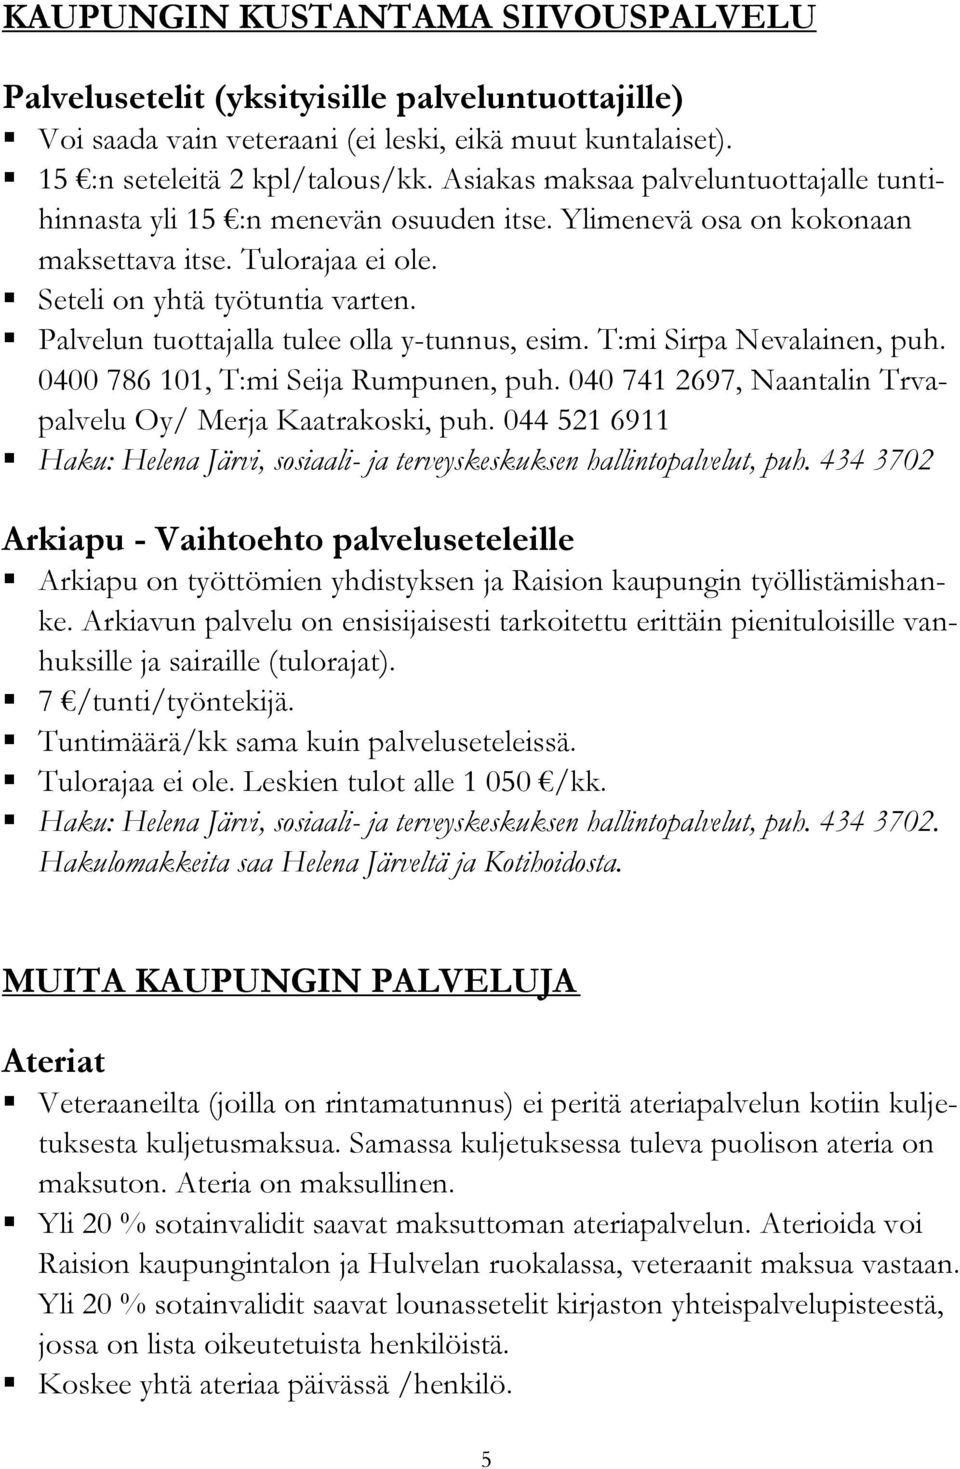 Palvelun tuottajalla tulee olla y-tunnus, esim. T:mi Sirpa Nevalainen, puh. 0400 786 101, T:mi Seija Rumpunen, puh. 040 741 2697, Naantalin Trvapalvelu Oy/ Merja Kaatrakoski, puh.